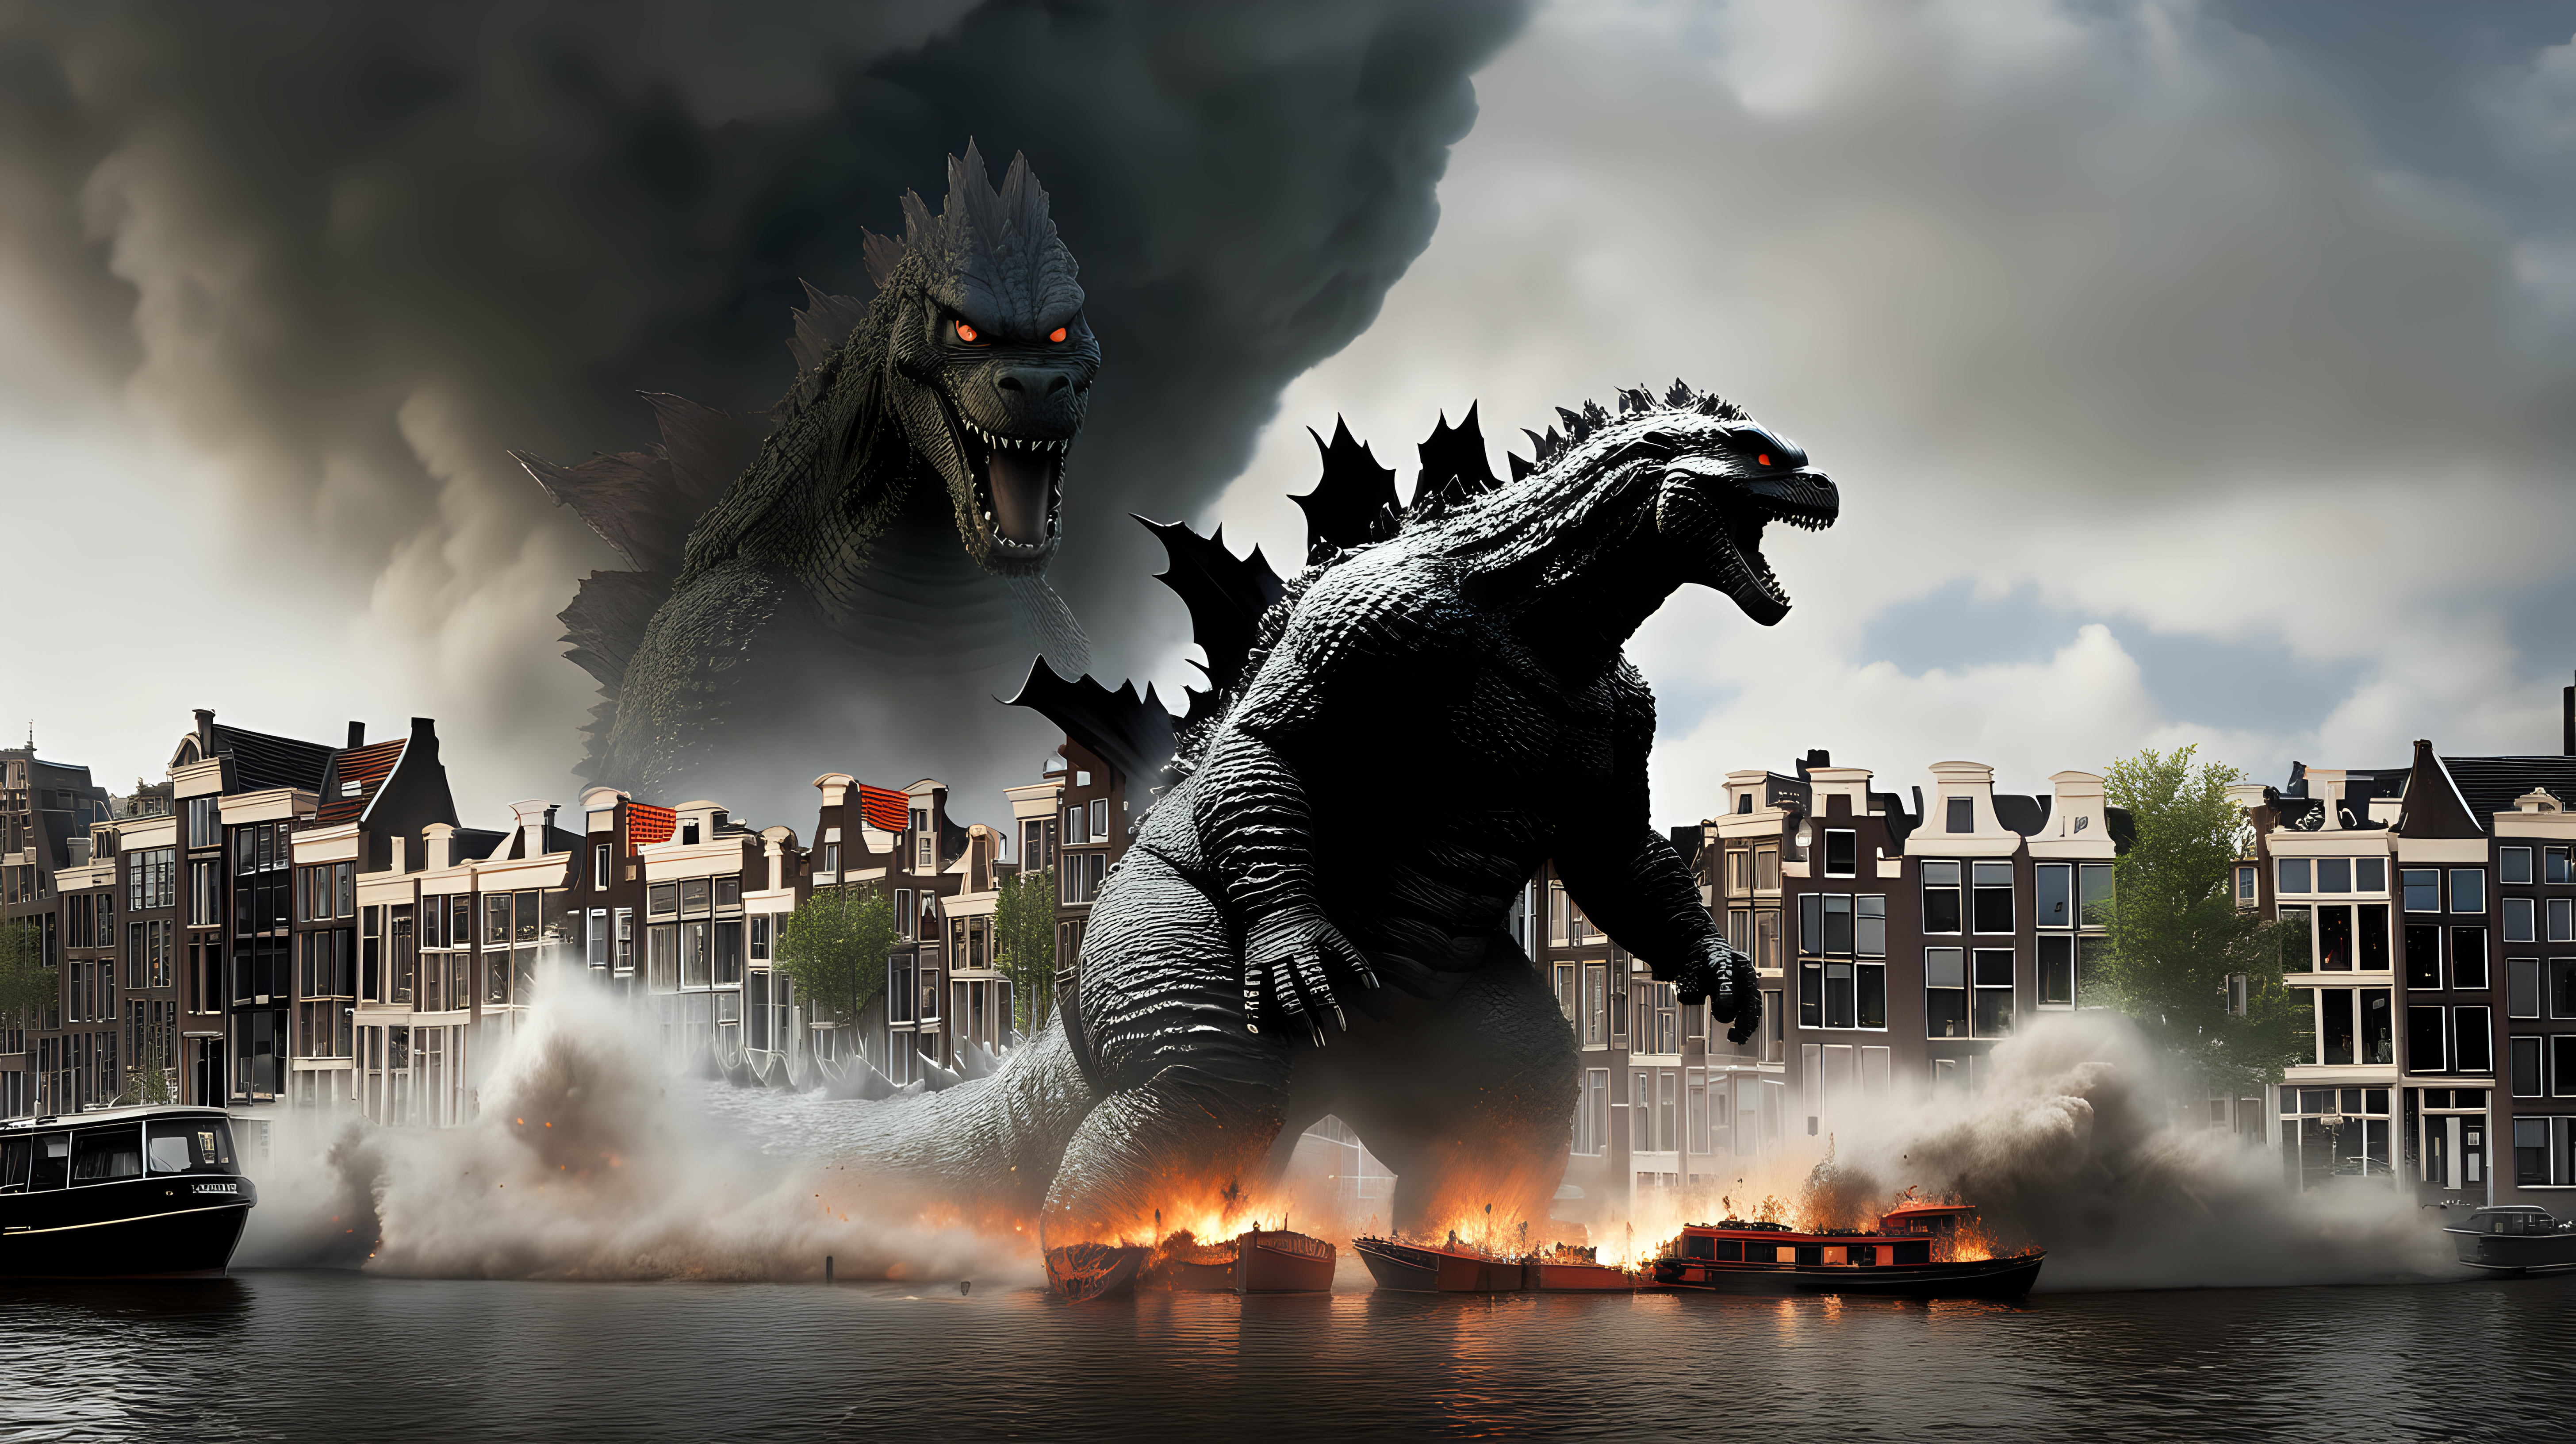 Godzilla destroying Amsterdam